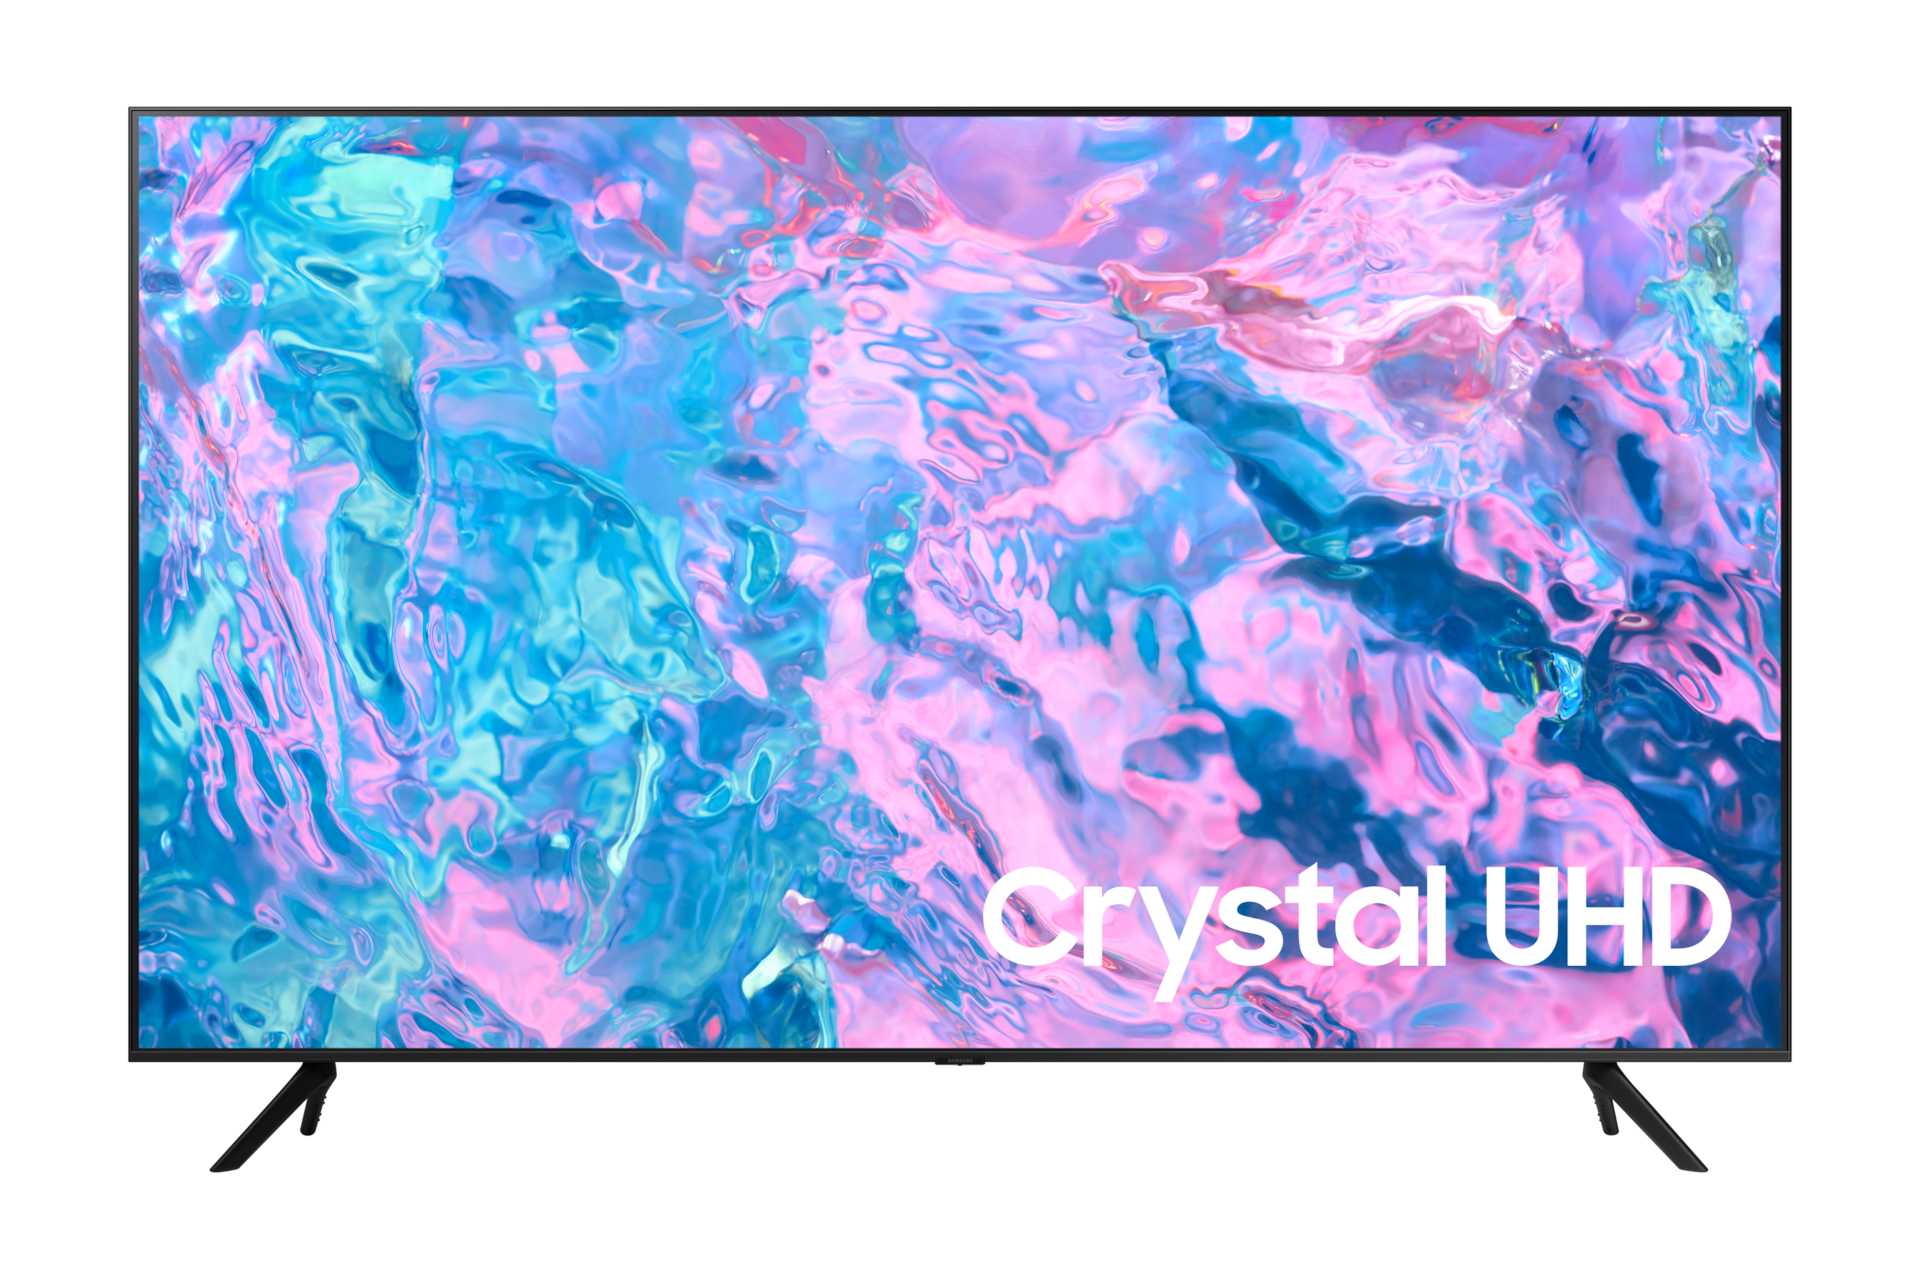 4K Crystal UHD CU7000 43 inch TV